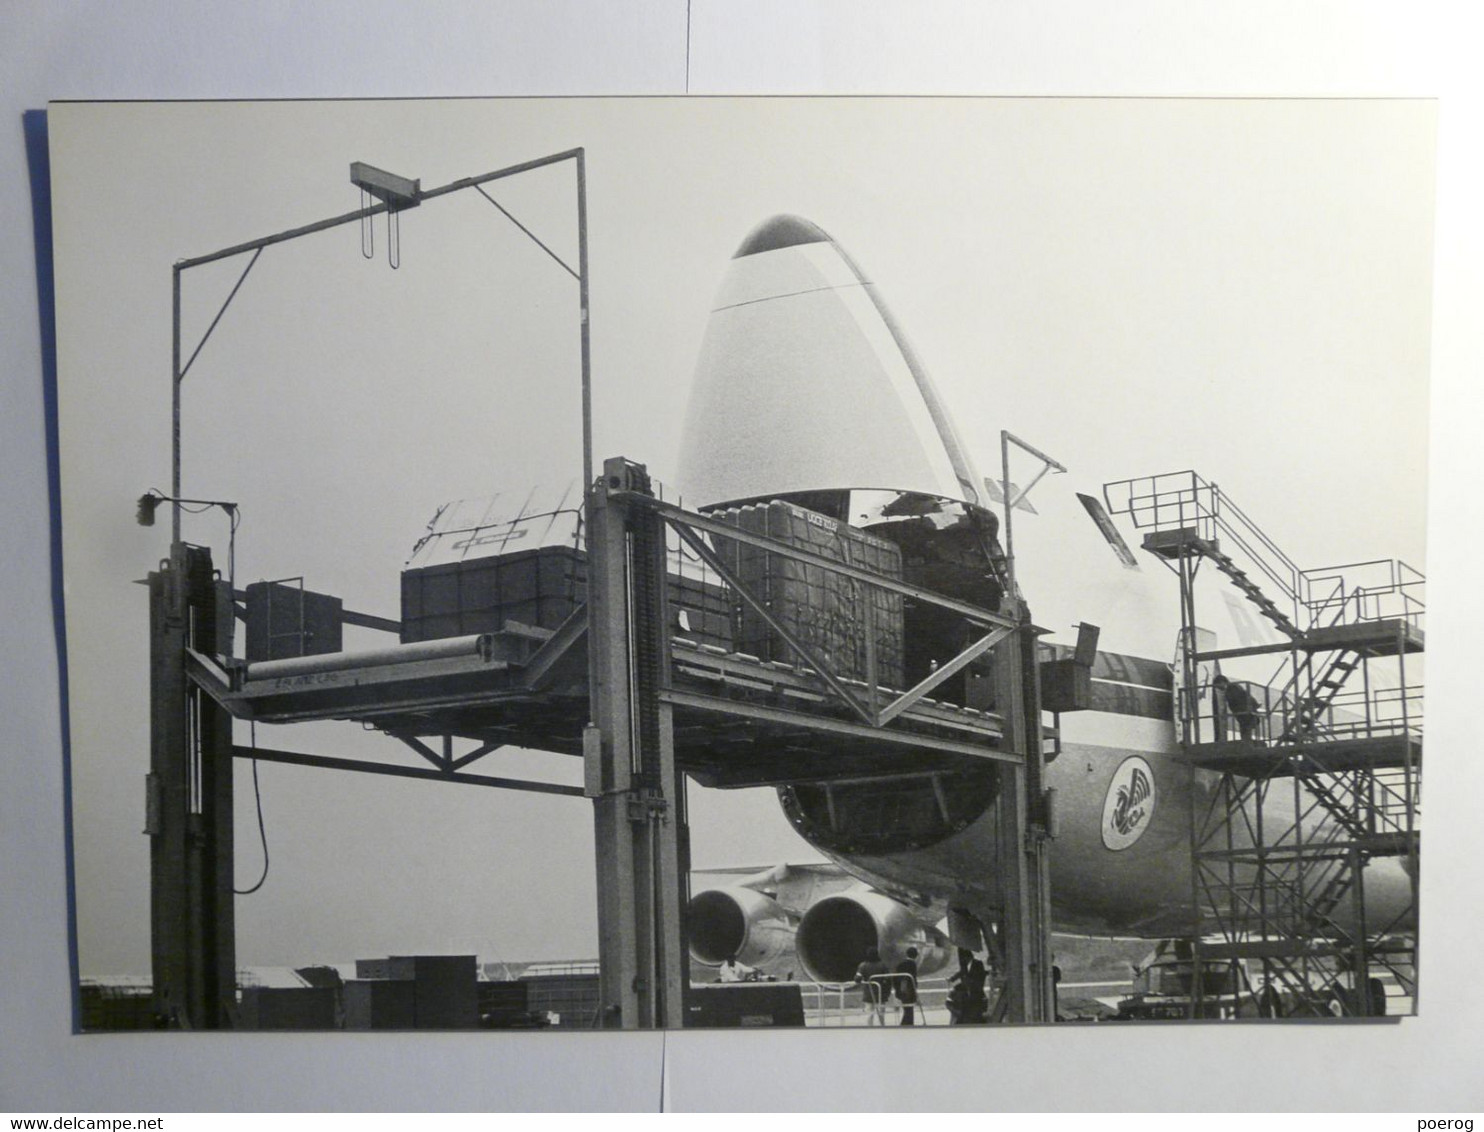 8 PHOTOS AVIONS AIR FRANCE DANS LEUR ENVELOPPE - SERVICE INFORMATION 1974 - CONCORDE BOEING 747 AIRBUS A300 CARAVELLE - Vliegtuigen